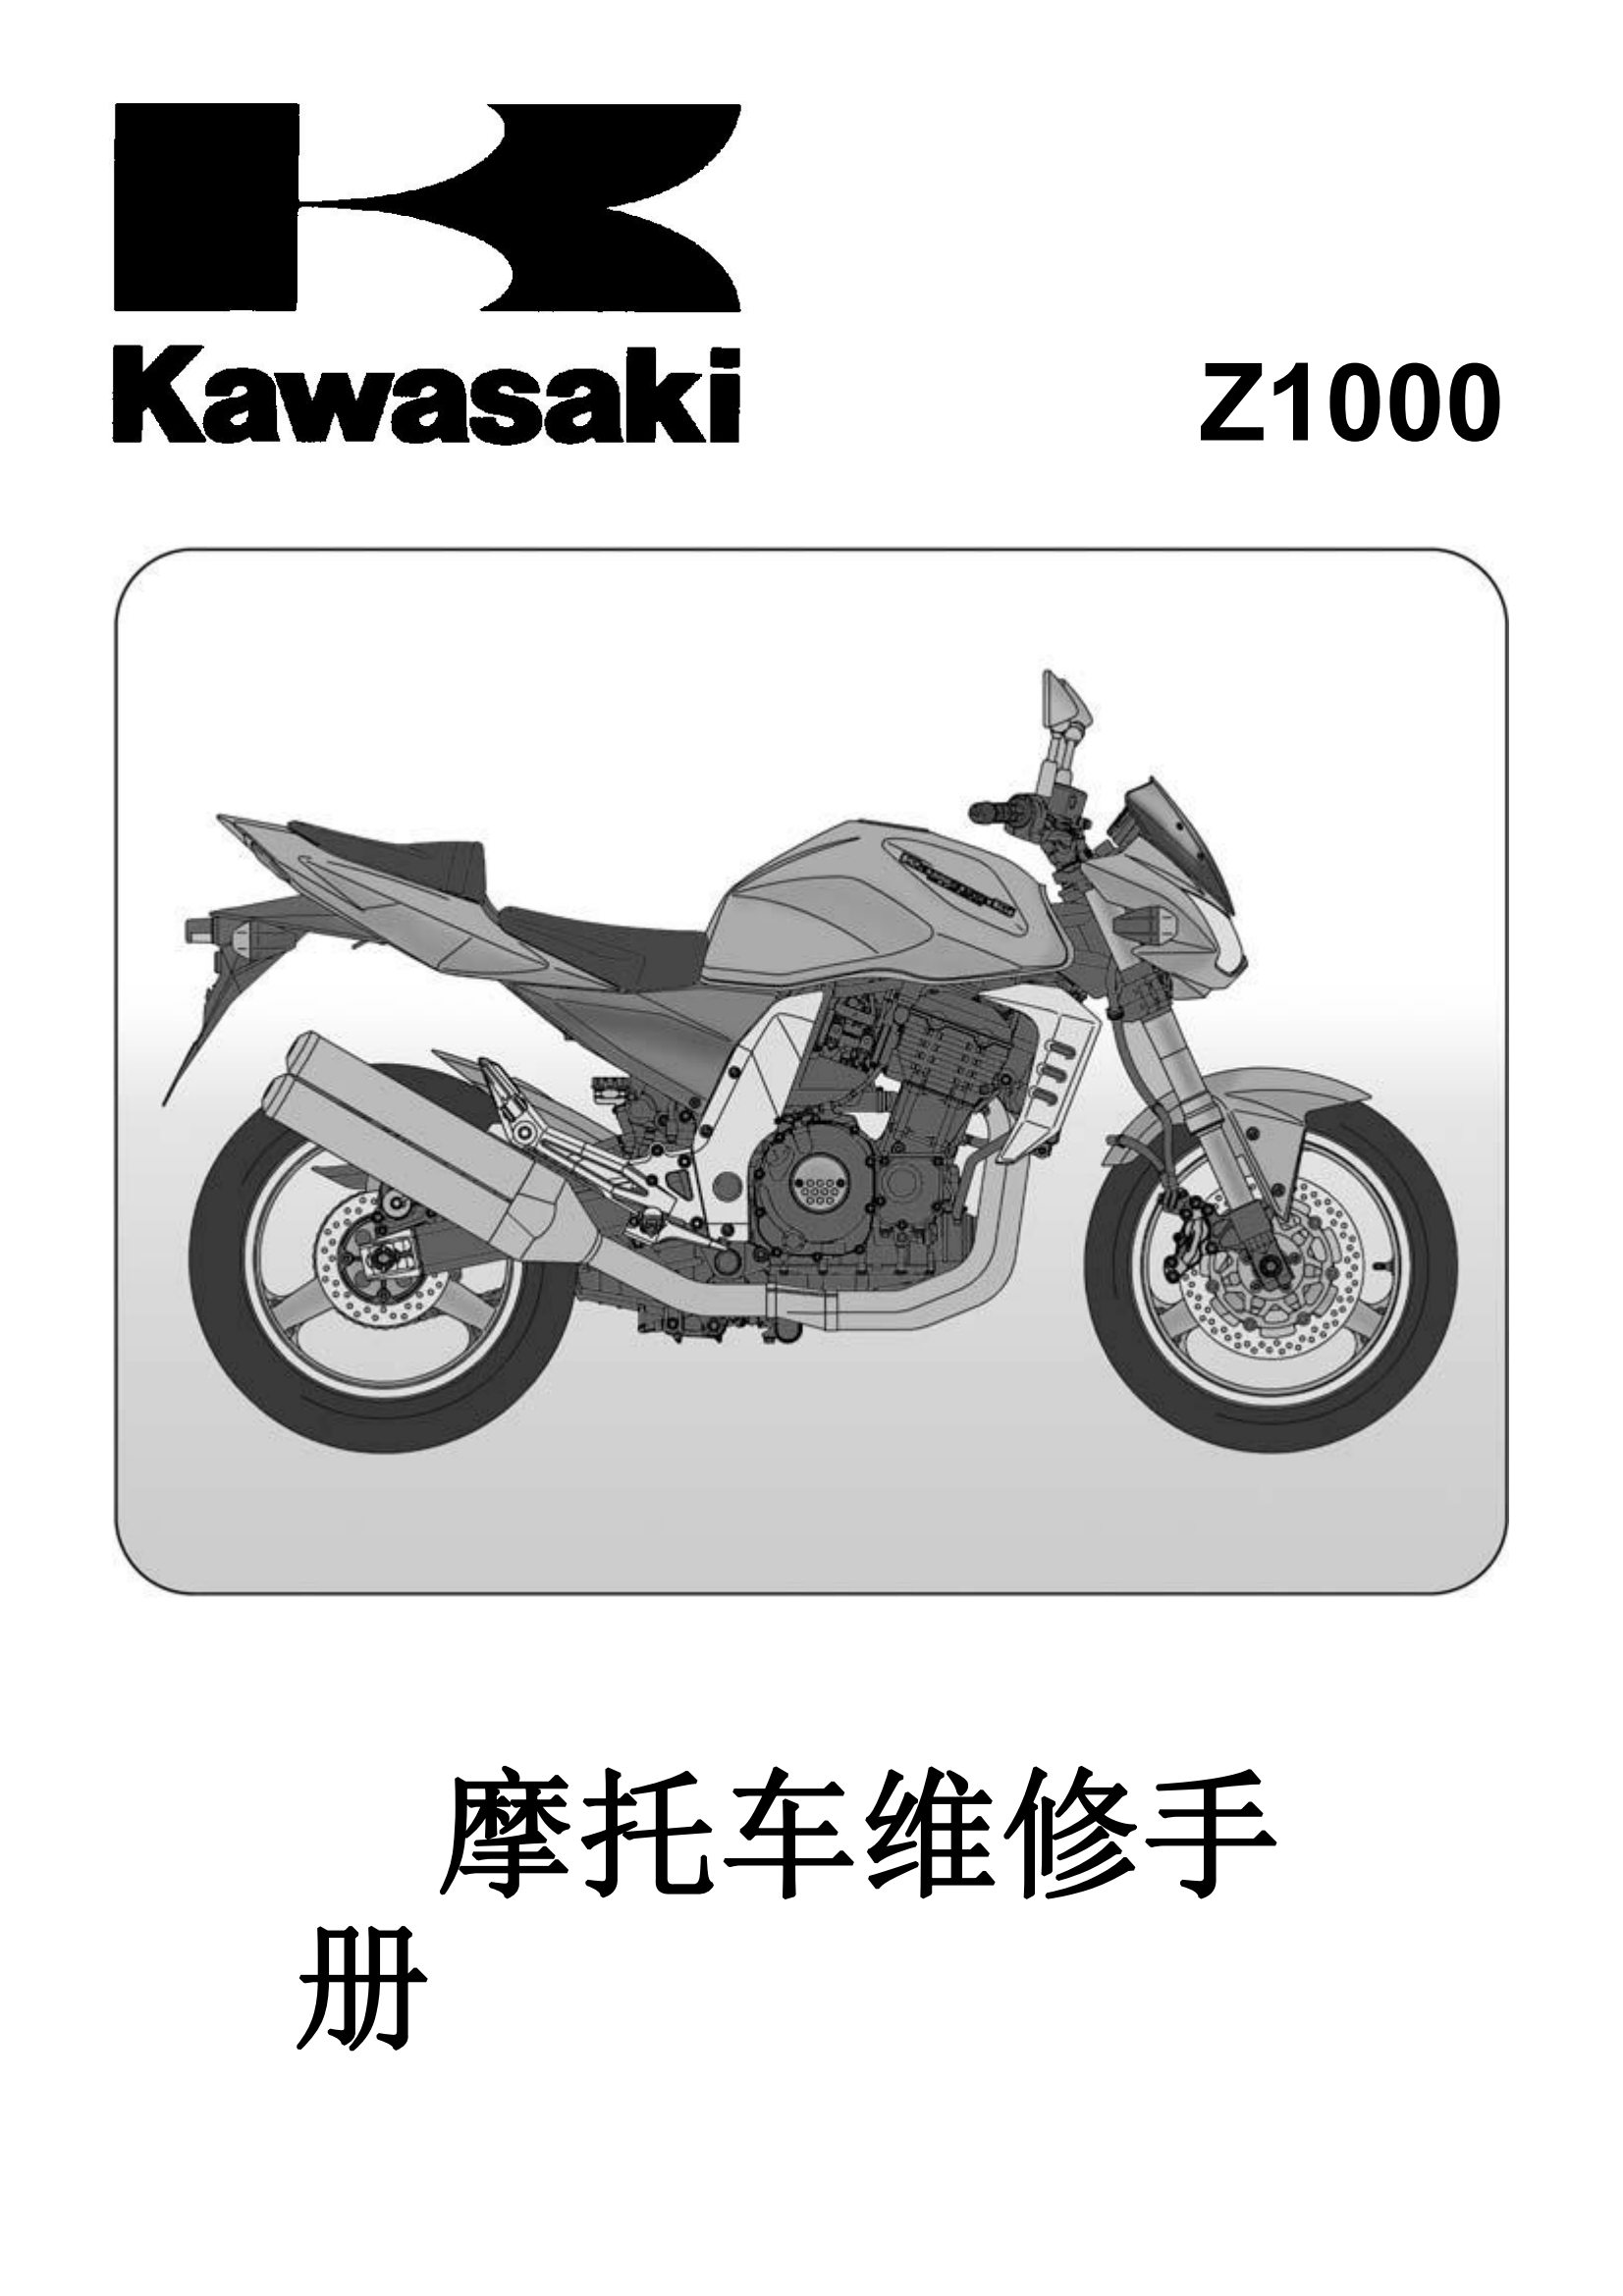 简体中文2003-2006年川崎z1000 kawasaki z1000维修手册插图